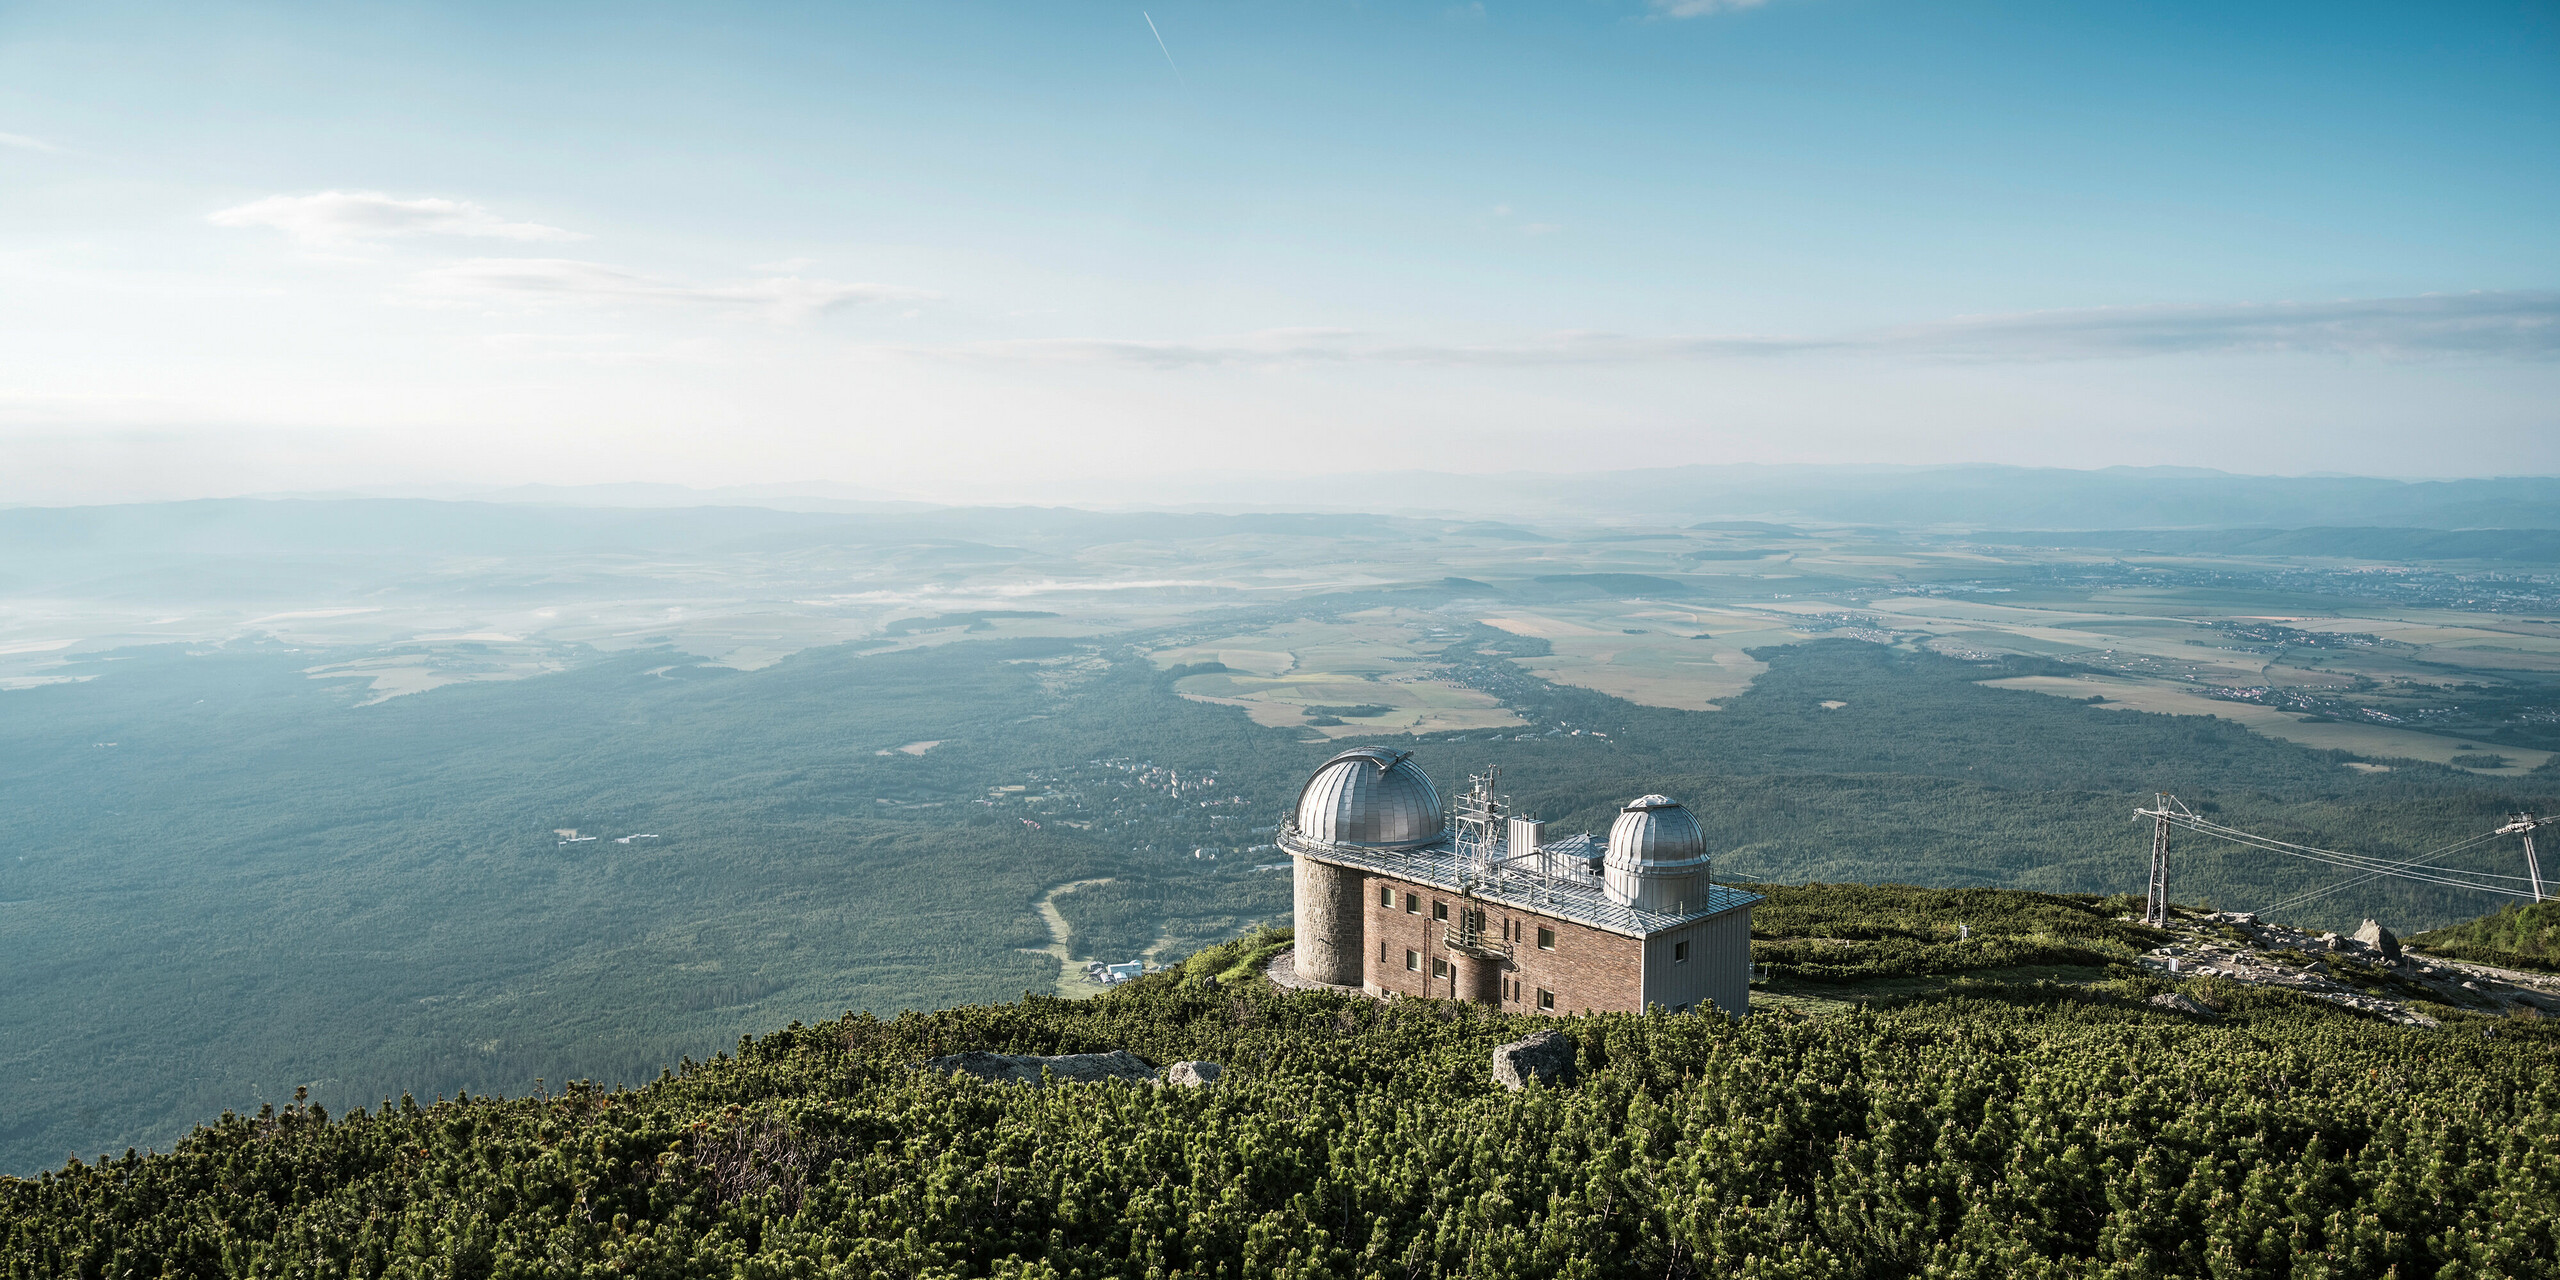 Atemberaubende Fernsicht auf die Sternwarte Skalnaty Pleso, gelegen in 1.783 m Höhe über dem Meeresspiegel, umgeben von der ruhigen Pracht der Hohen Tatra in der Slowakei. Die beiden charakteristischen Kuppeln, bedeckt mit glänzendem PREFALZ in Silbermetallic, reflektieren die Weite des Himmels und harmonieren mit der natürlichen Umgebung. Das Observatorium steht nicht nur für astronomische Exzellenz, sondern auch für die Beständigkeit und ökologische Stärke von PREFA, dessen Aluminiumprodukte selbst in dieser entlegenen Höhe Schutz und Beständigkeit bieten, was durch eine umfassende 40-jährige Garantie bekräftigt wird.